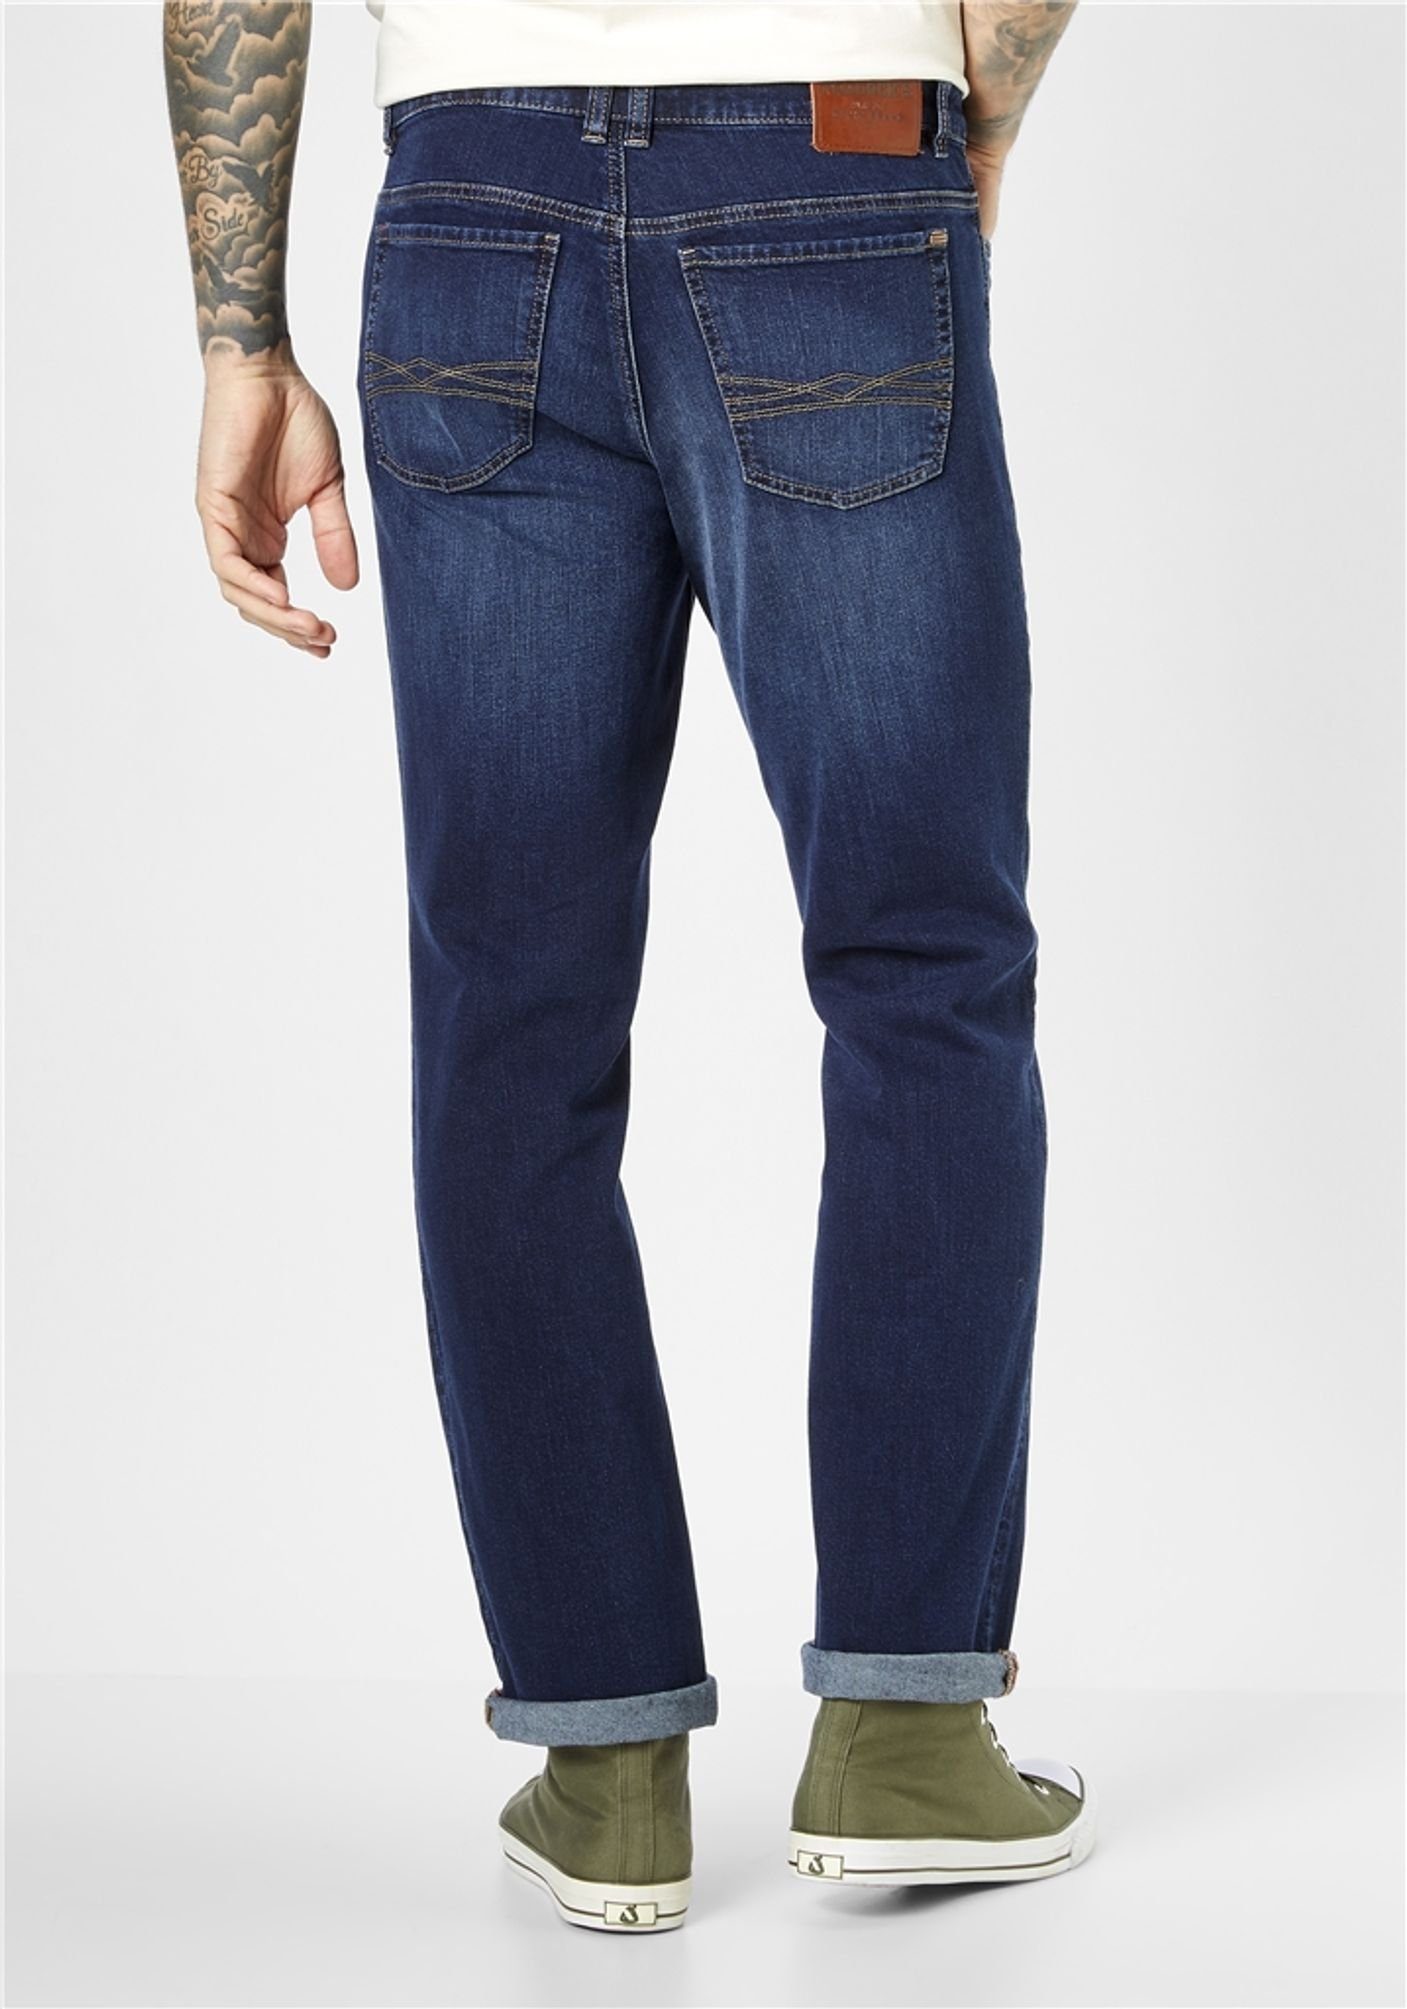 RANGER (4310) used 5-Pocket-Jeans stone dark PIPE Paddock's